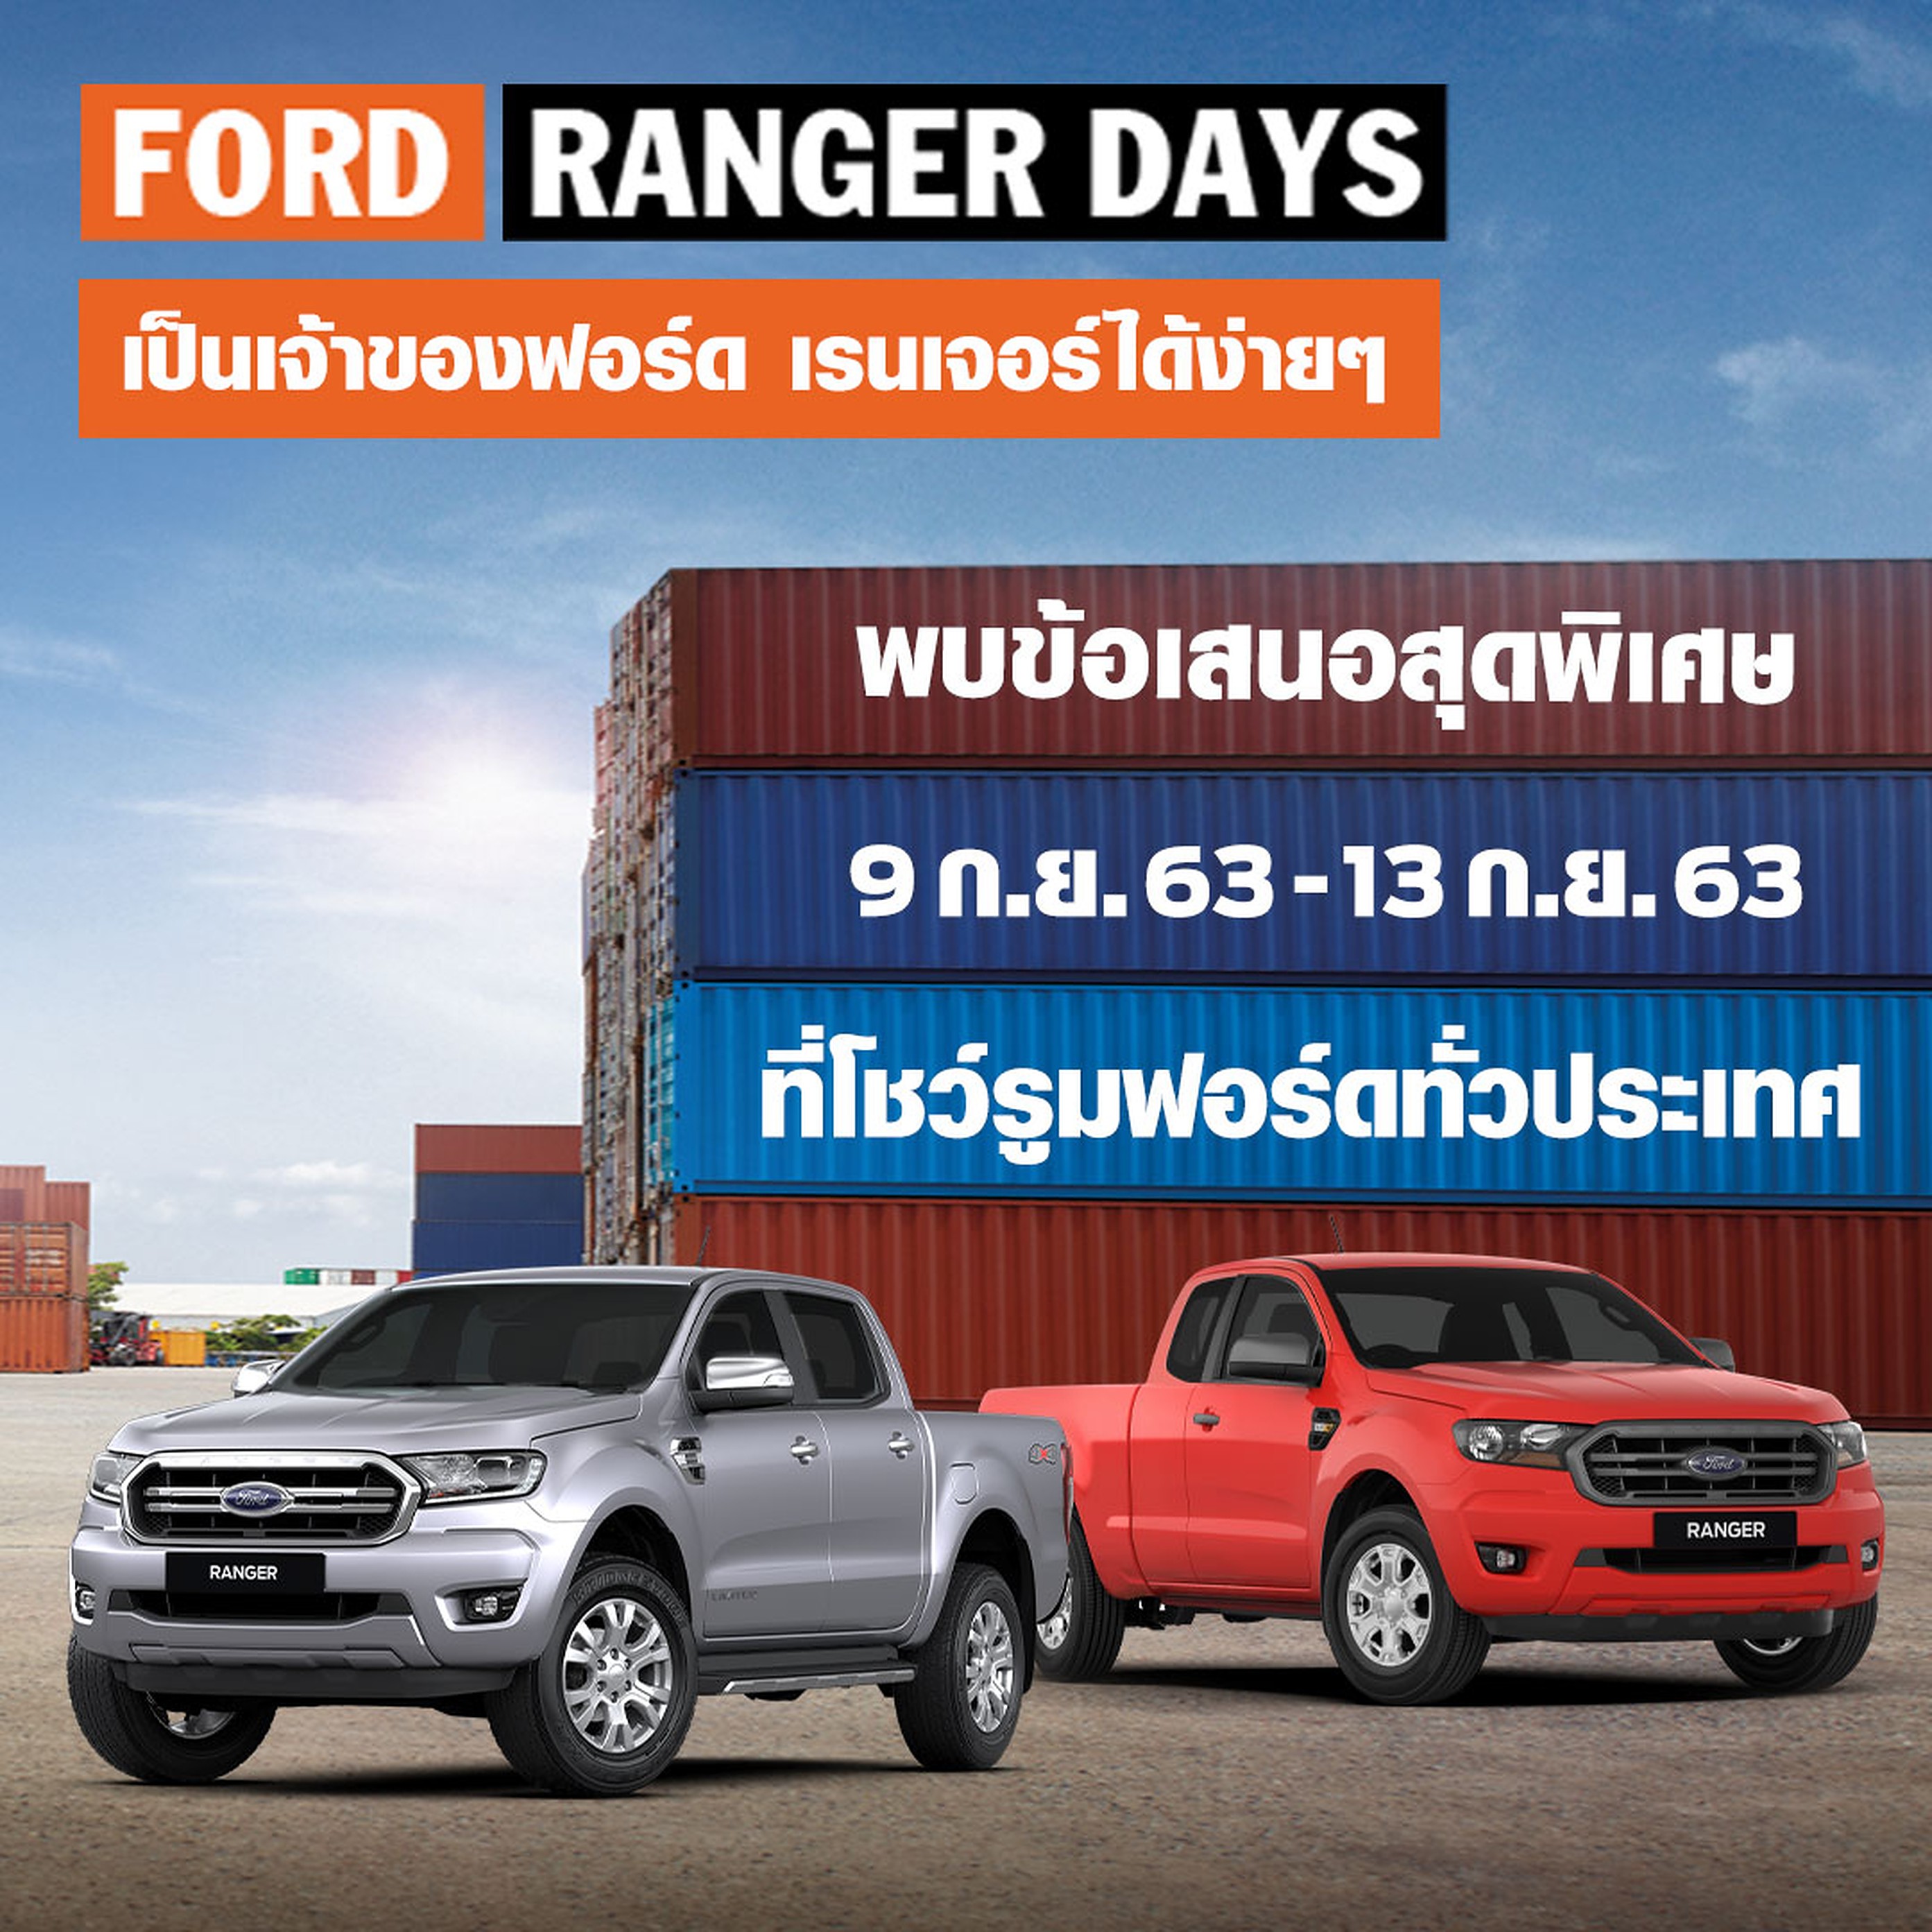 ฟอร์ดจัดแคมเปญ 'Ranger Days พบรถยนต์ฟอร์ดข้อเสนอพิเศษสุดคุ้ม เมื่อออกรถในเดือนกันยายน